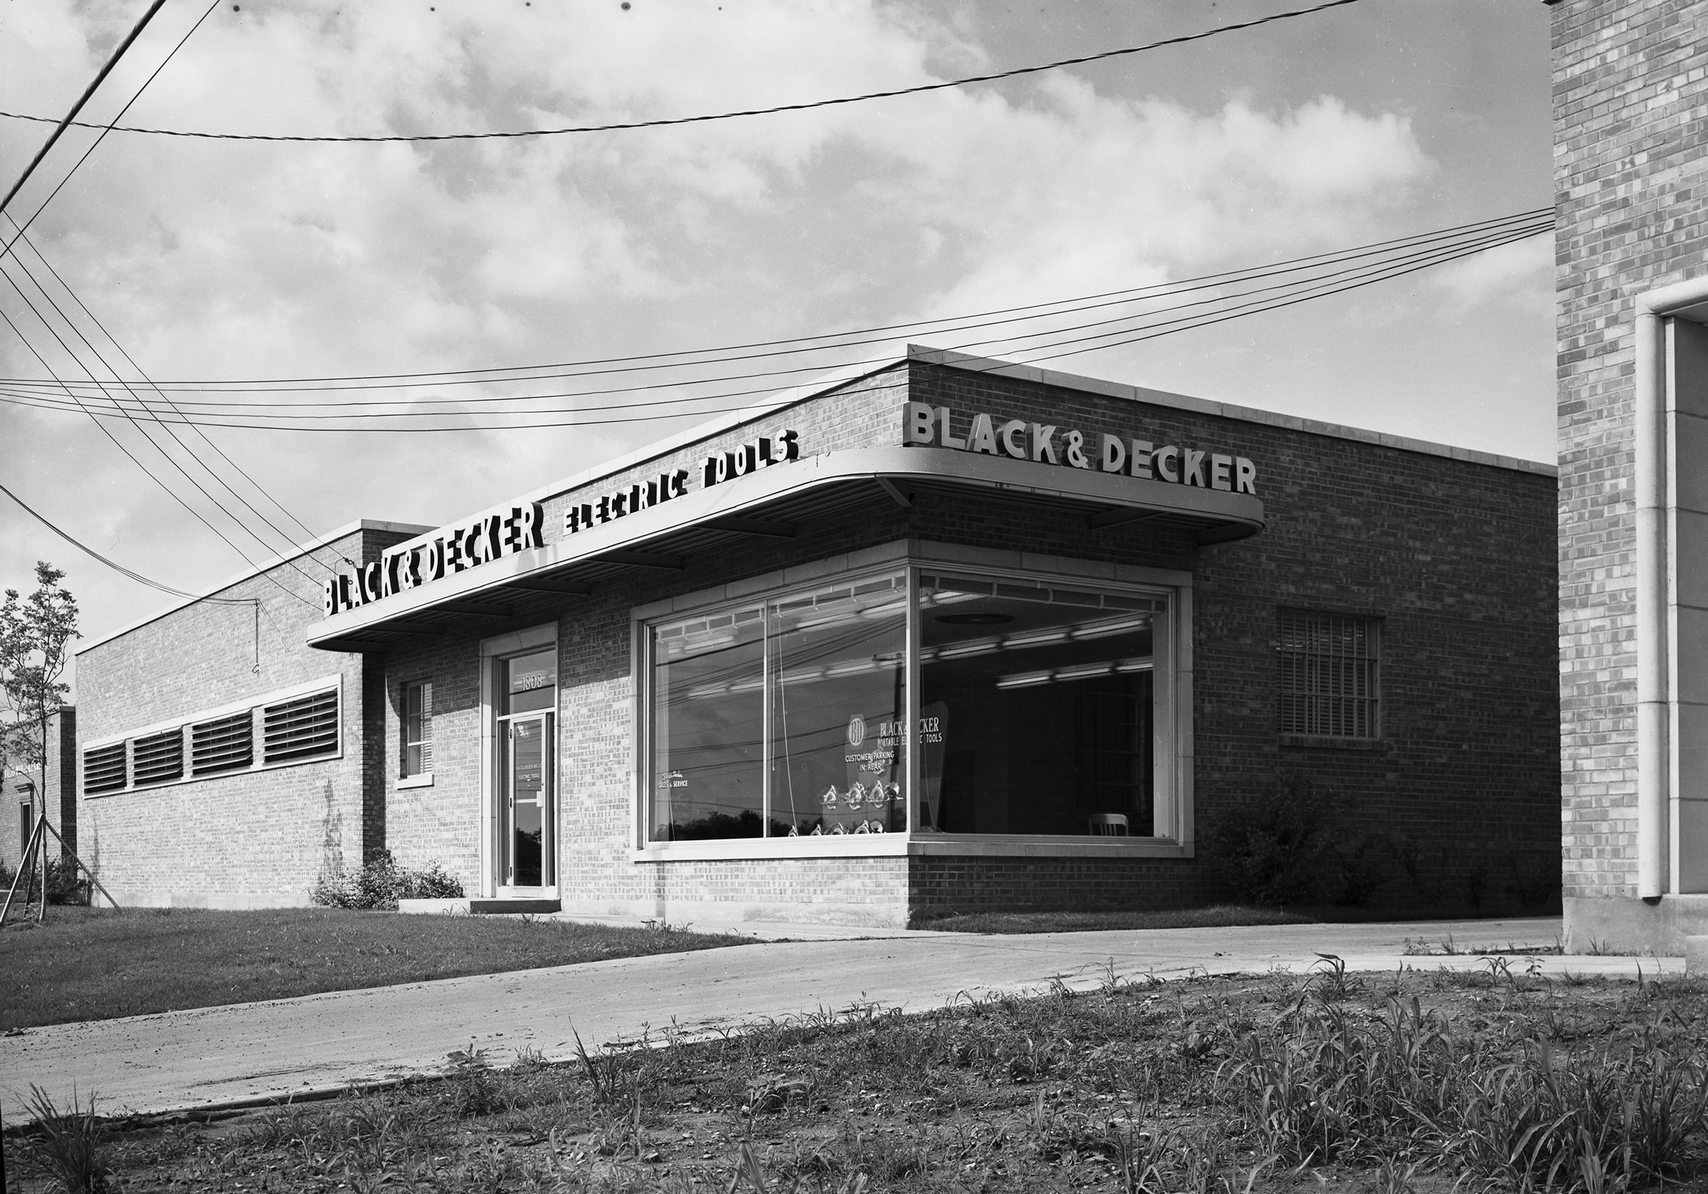 Black & Decker building, Oak Lawn industrial area, Dallas, Texas, 1954